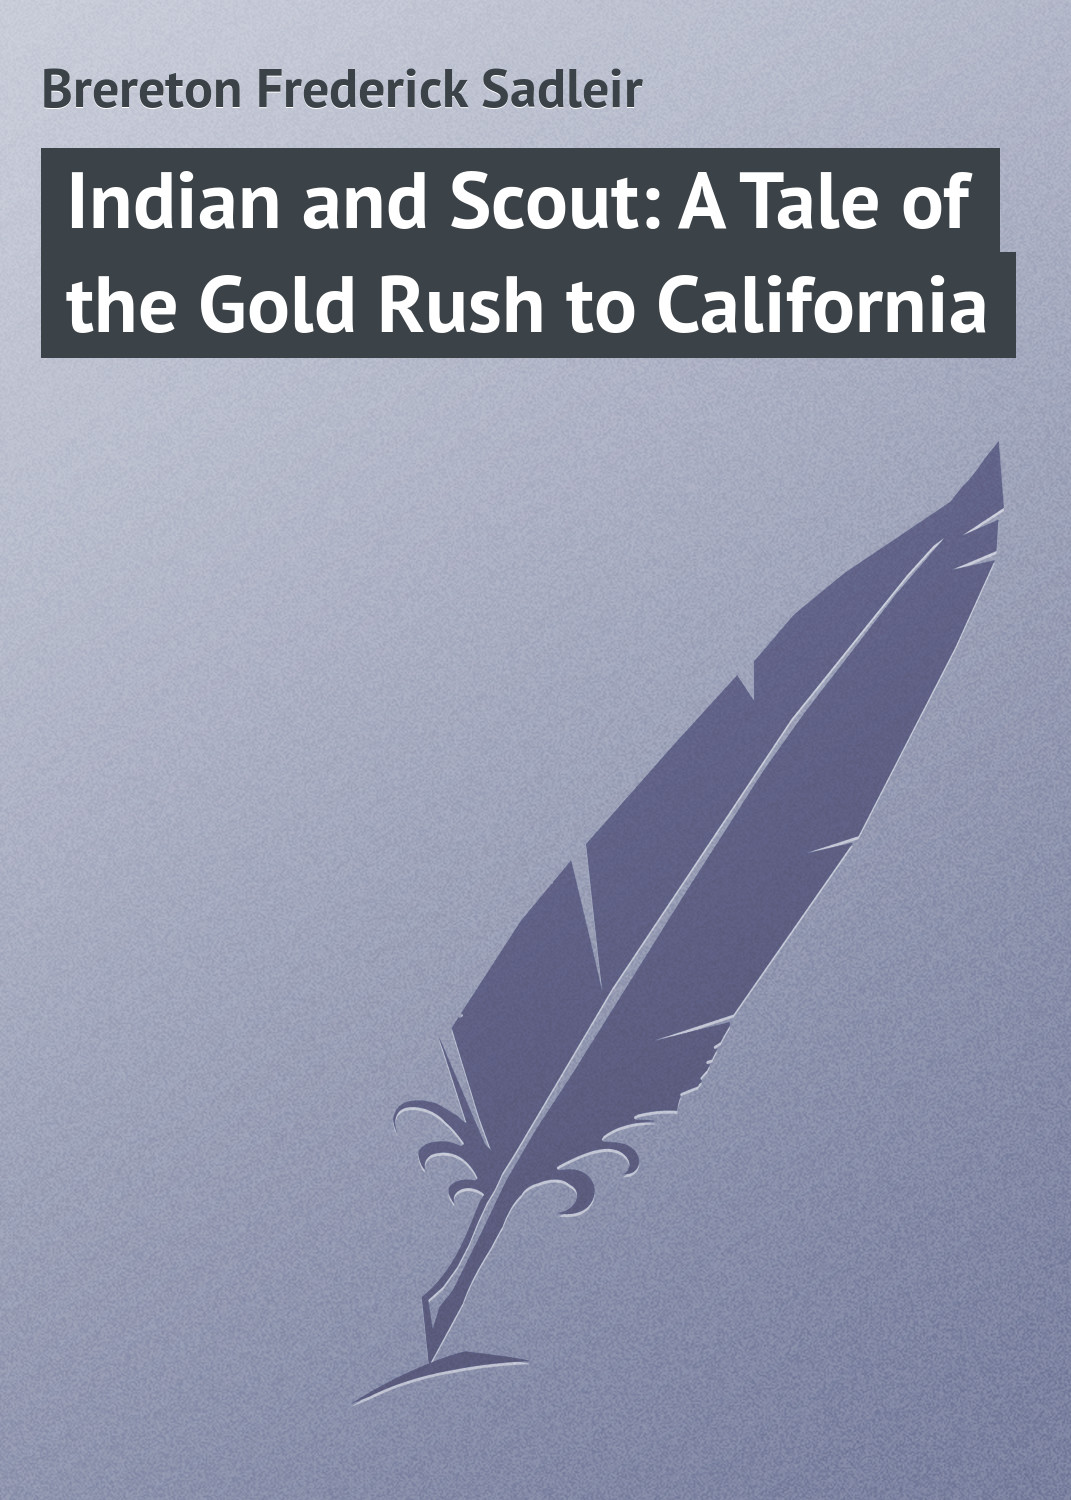 Книга Indian and Scout: A Tale of the Gold Rush to California из серии , созданная Frederick Brereton, может относится к жанру Зарубежная классика, Зарубежные детские книги. Стоимость электронной книги Indian and Scout: A Tale of the Gold Rush to California с идентификатором 23149323 составляет 5.99 руб.